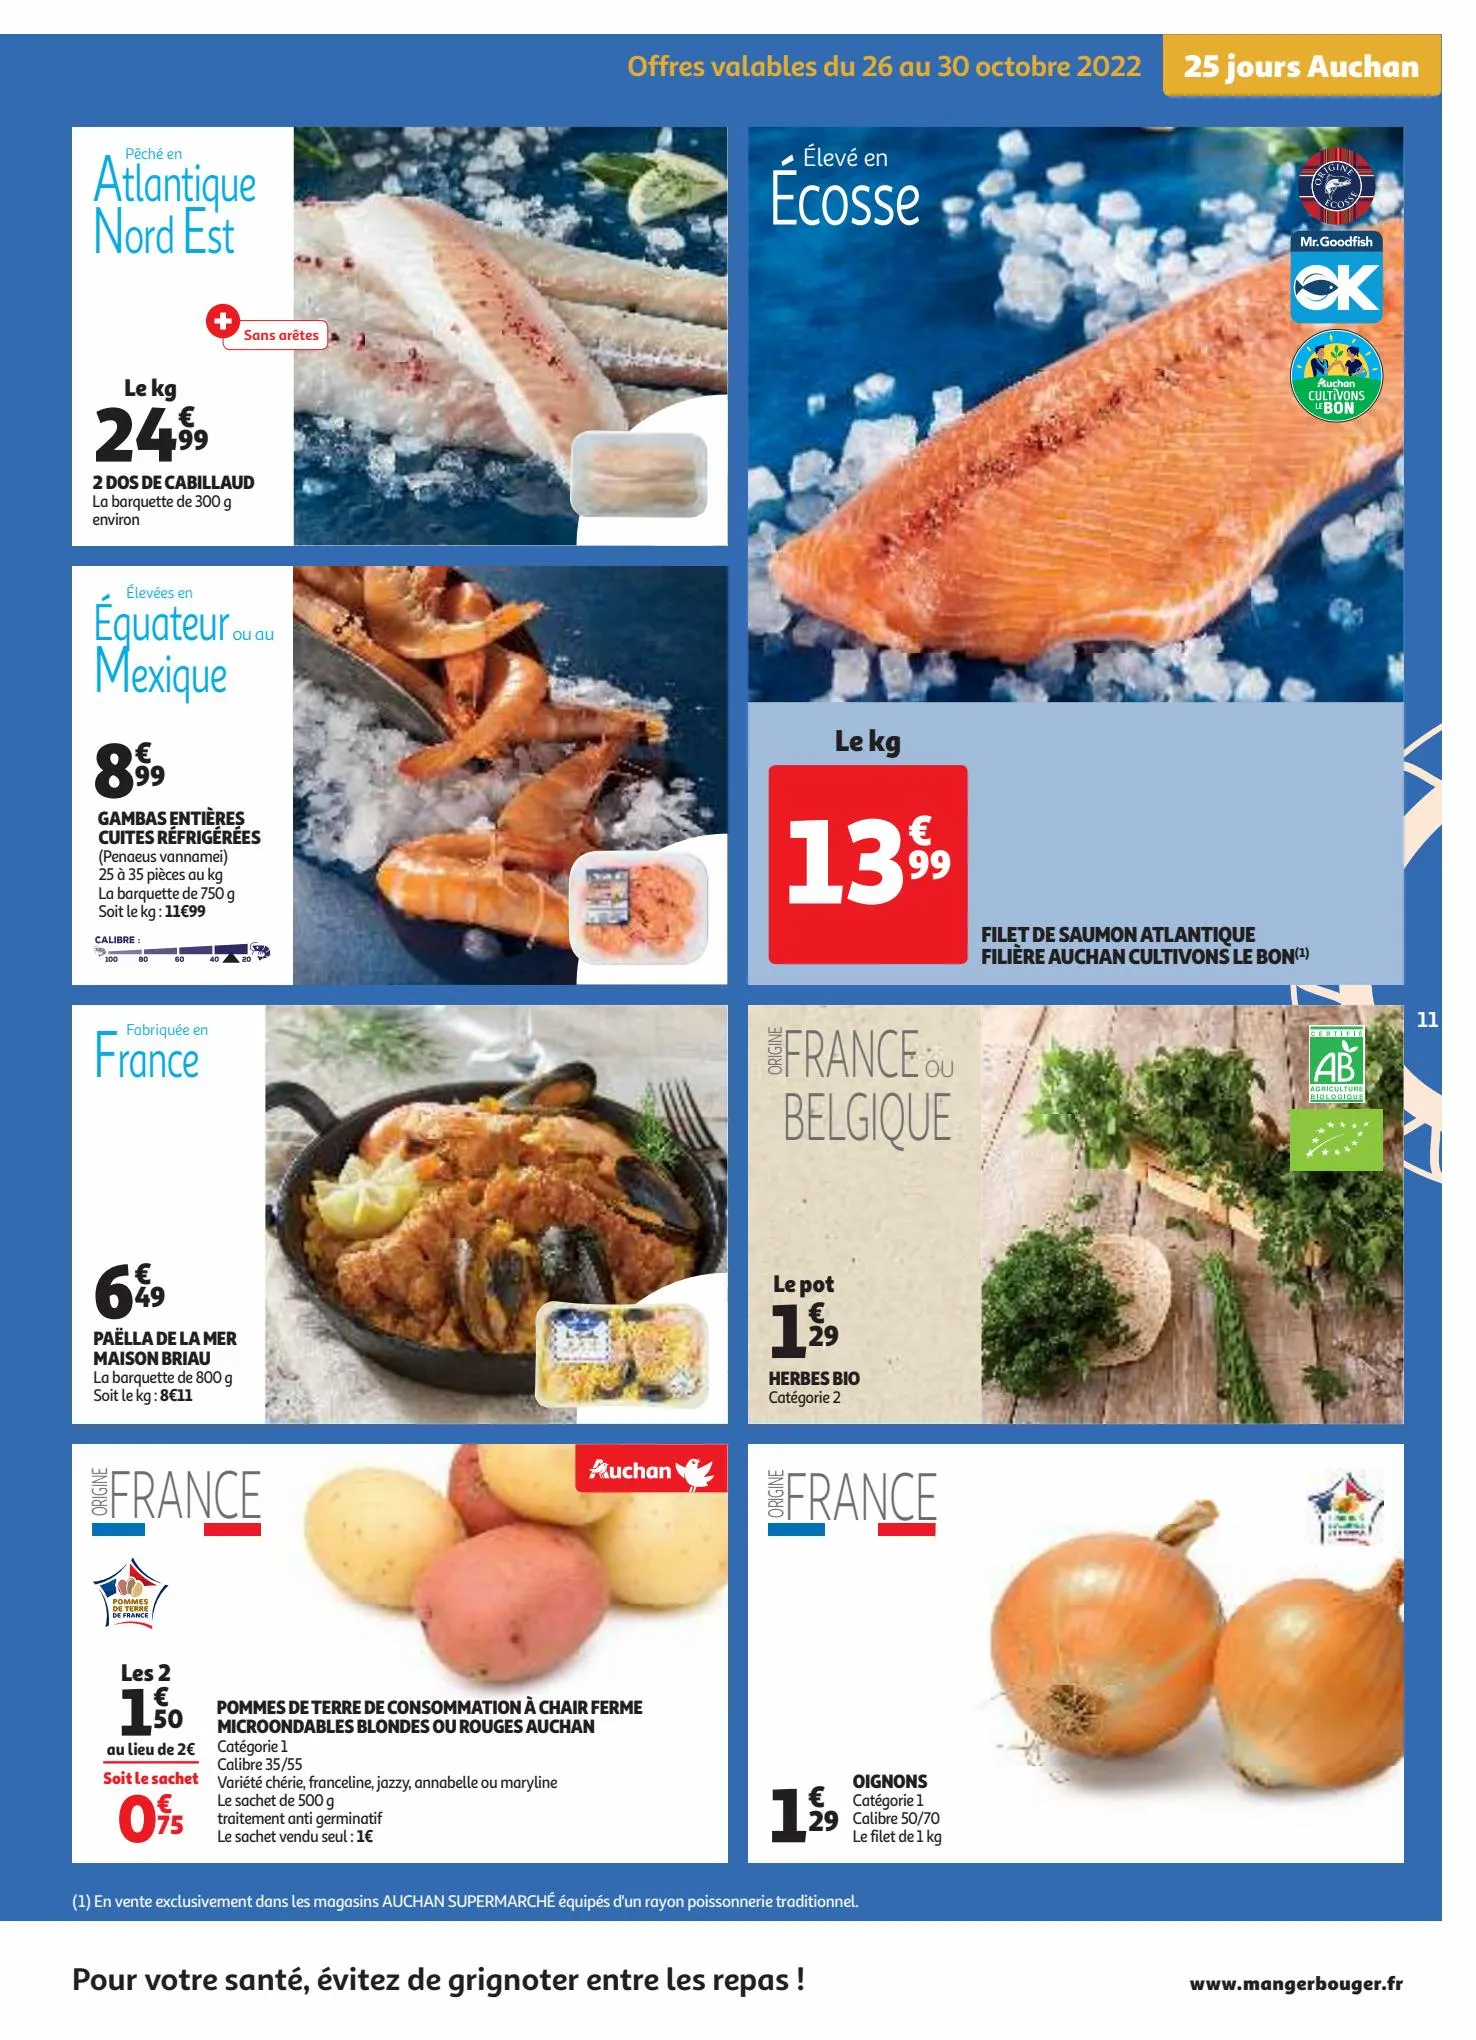 Catalogue 25 jours Auchan, page 00011